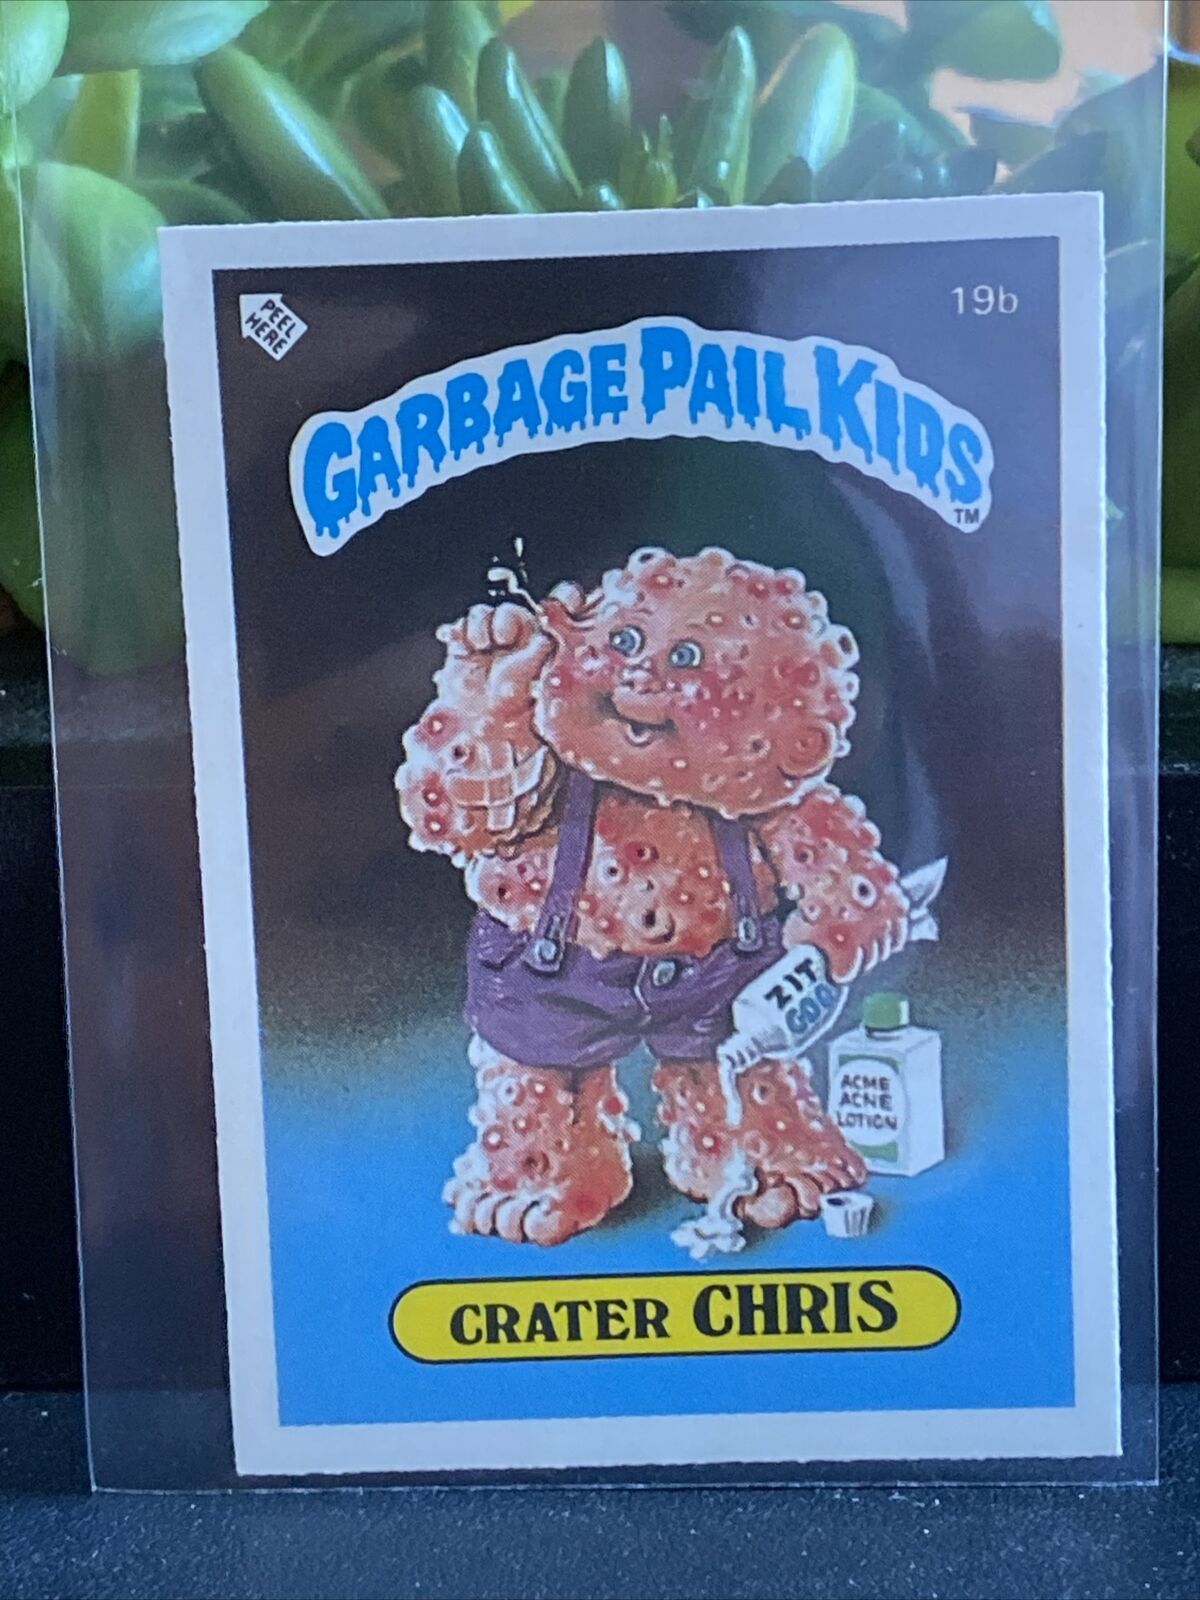 Garbage Pail Kids 1985 UK Minis Crater Chris 19b